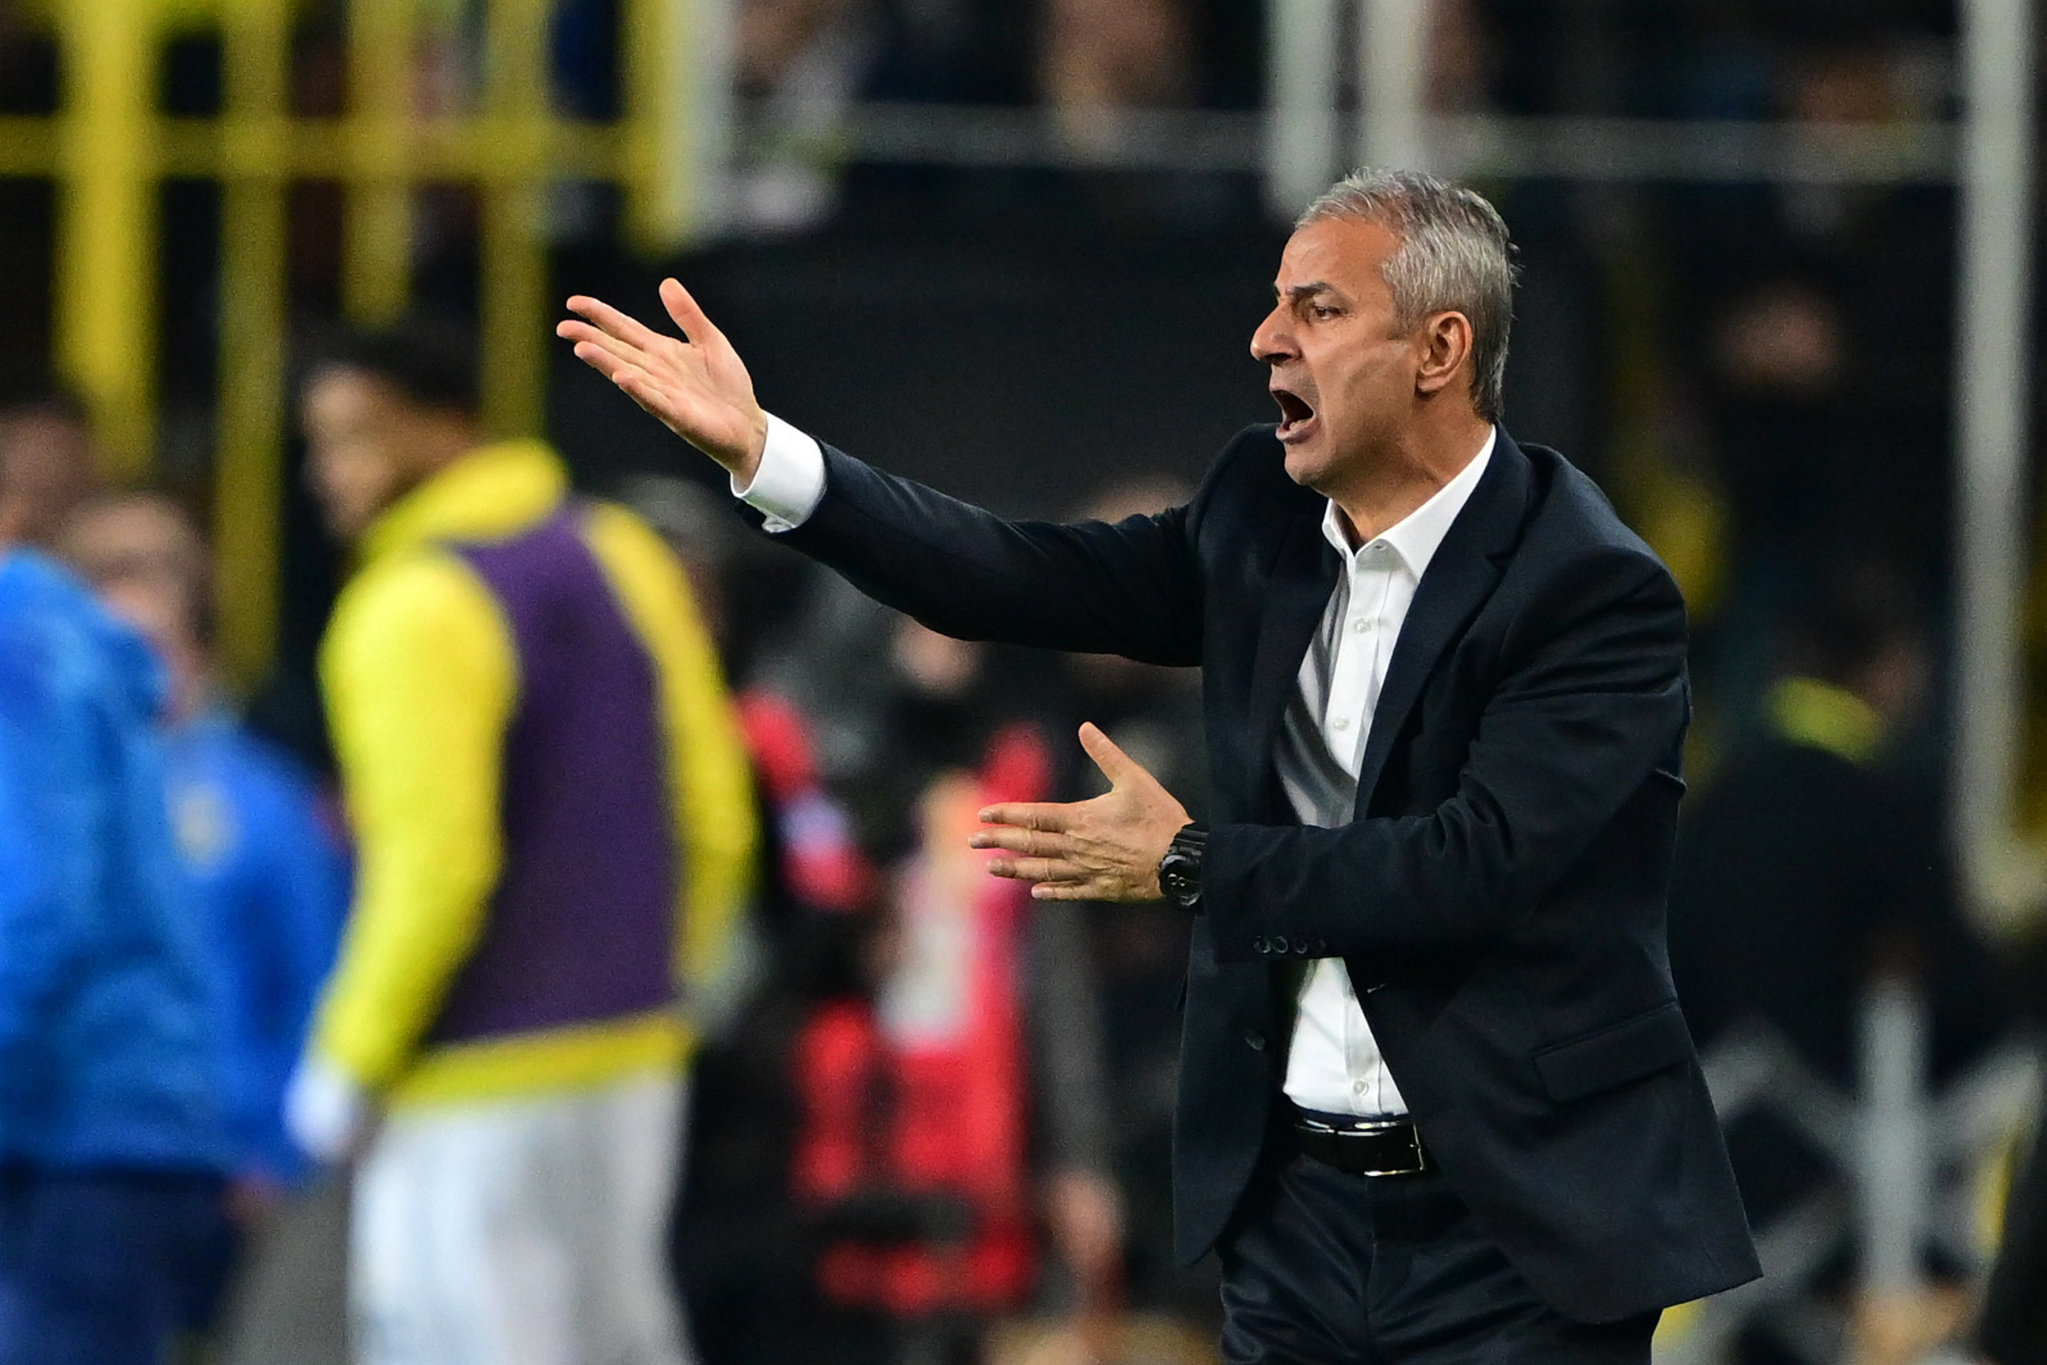 TRANSFER HABERİ: Fenerbahçe’ye 40 milyon Euro’luk yıldız! Jorge Jesus’un takımından geliyor